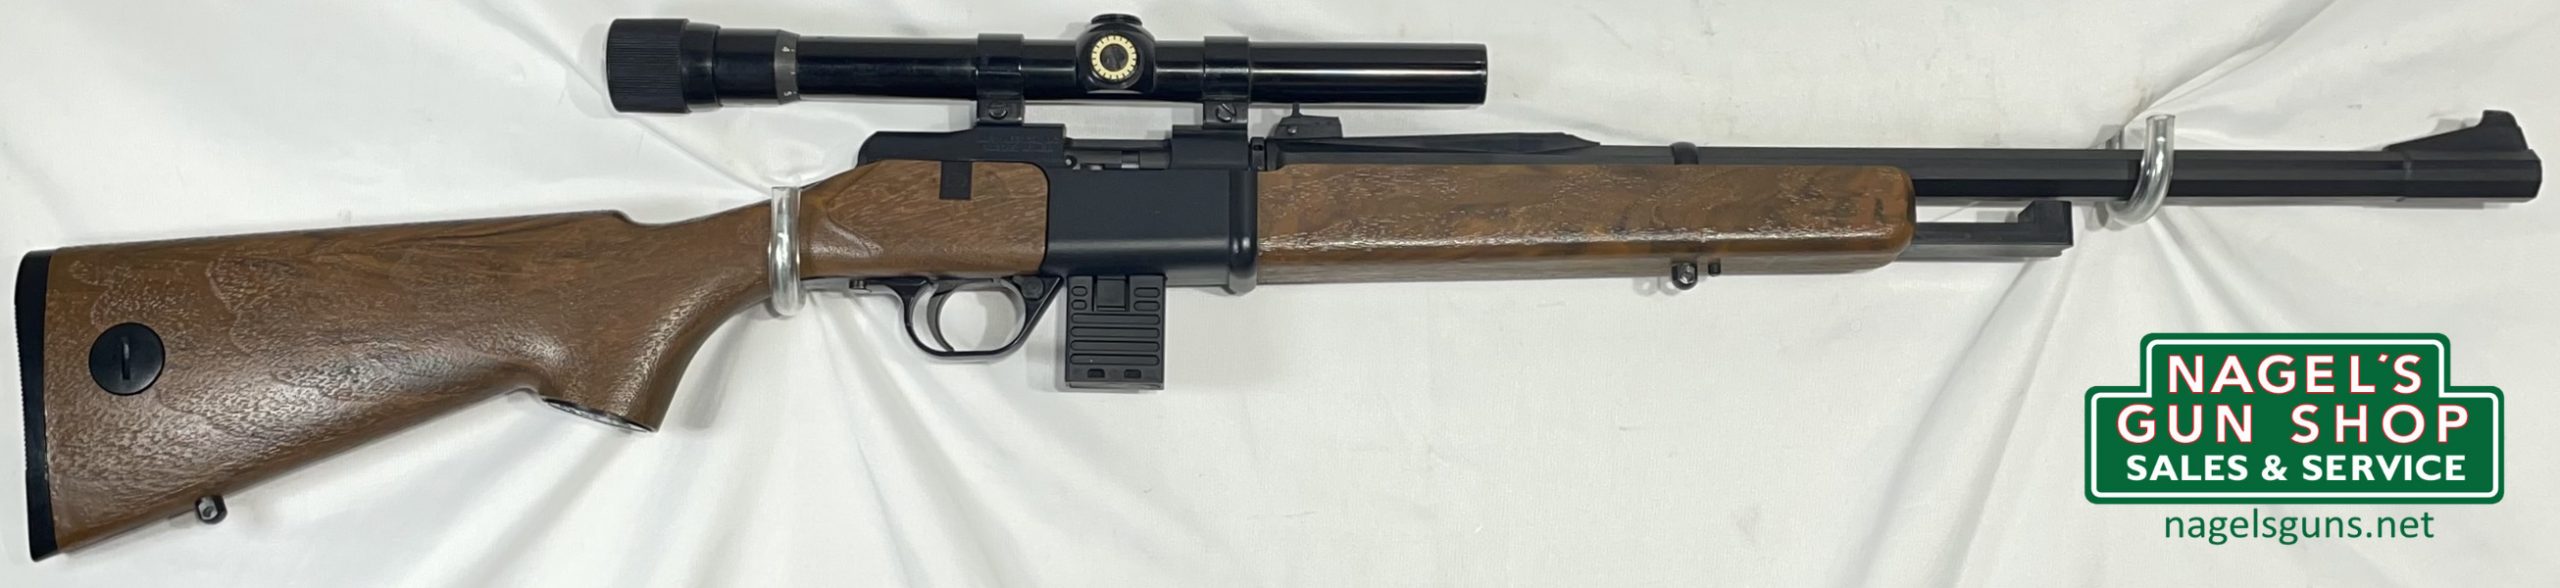 Daisy 2203 22LR Rifle